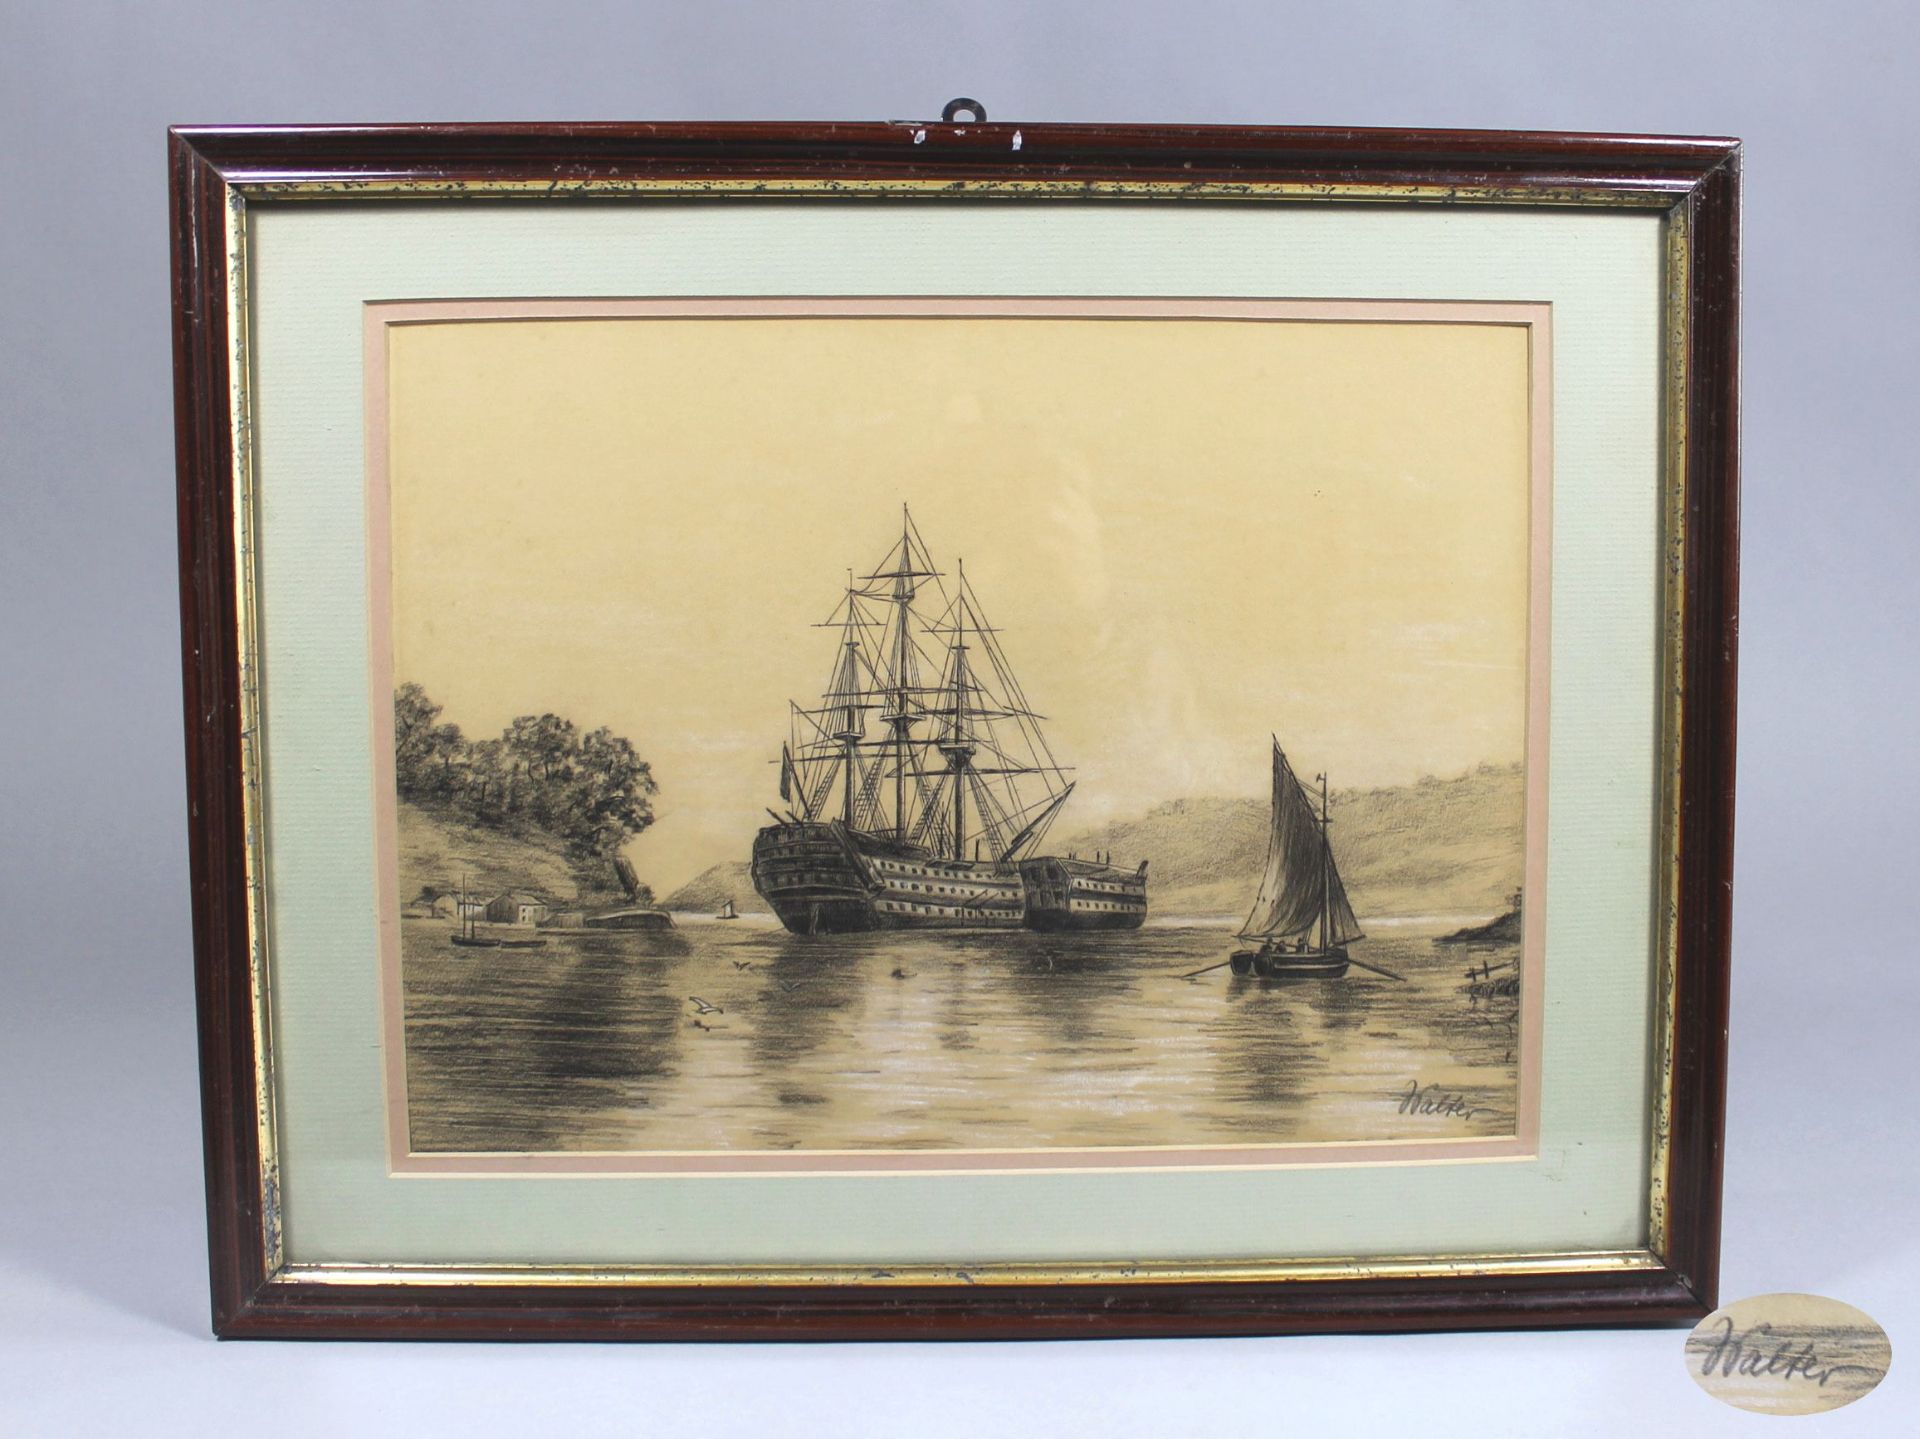 1 Zeichnung gerahmt "Segelschiff", rechts unten signiert Walter, ca. 29cm x 39,5cm (Motivgrösse),